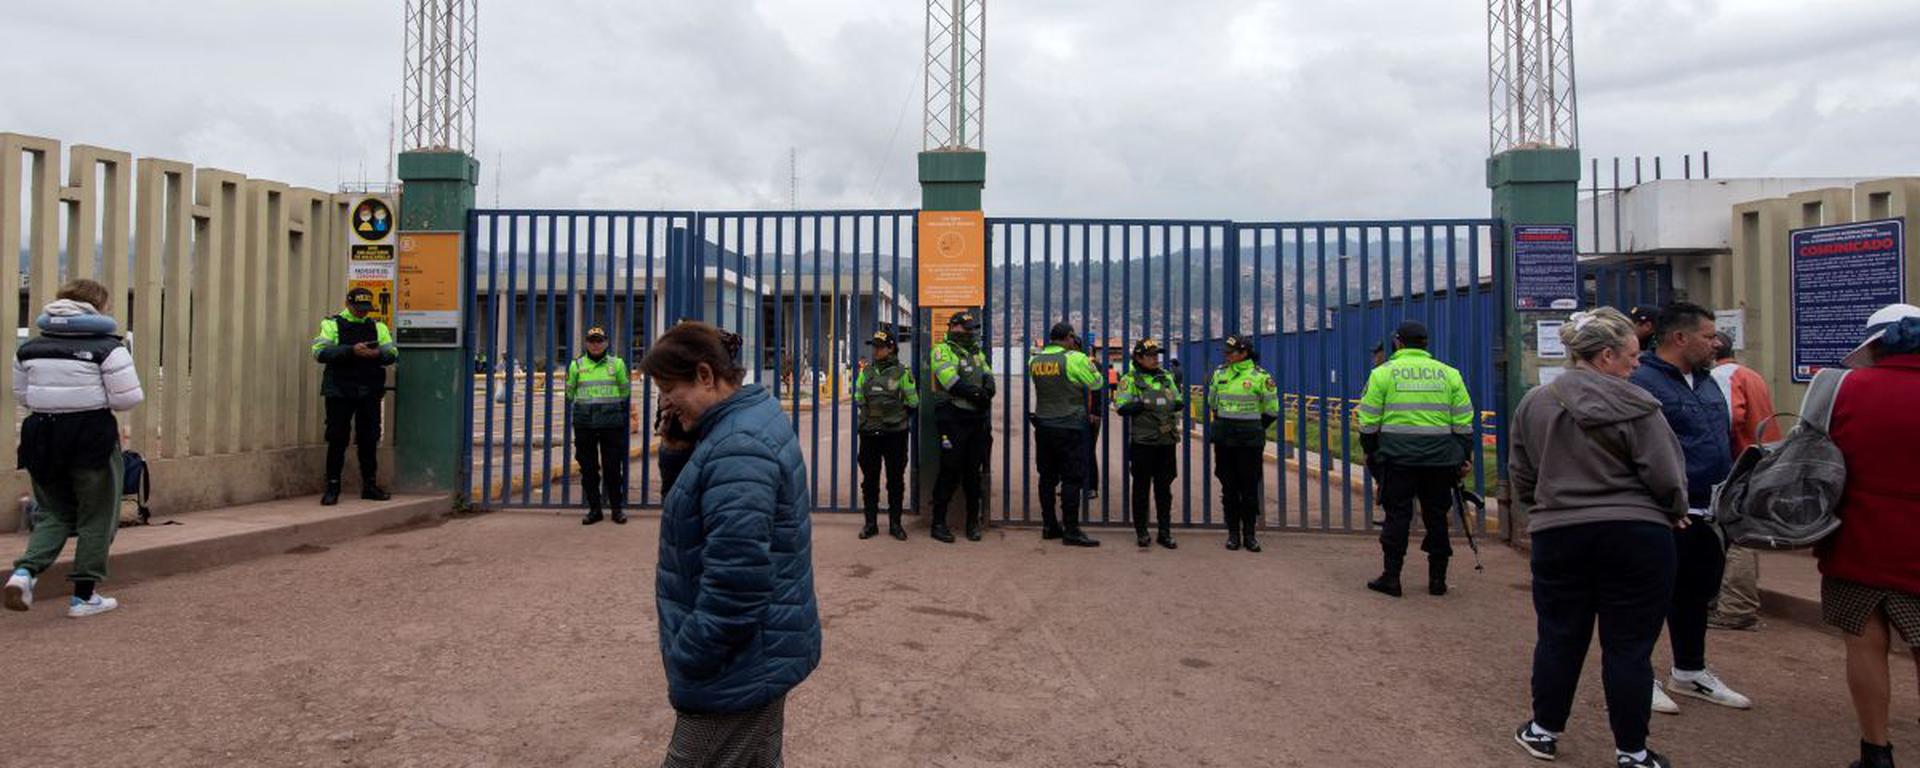 Cierran temporalmente el aeropuerto del Cusco, ¿cómo afecta a los vuelos?